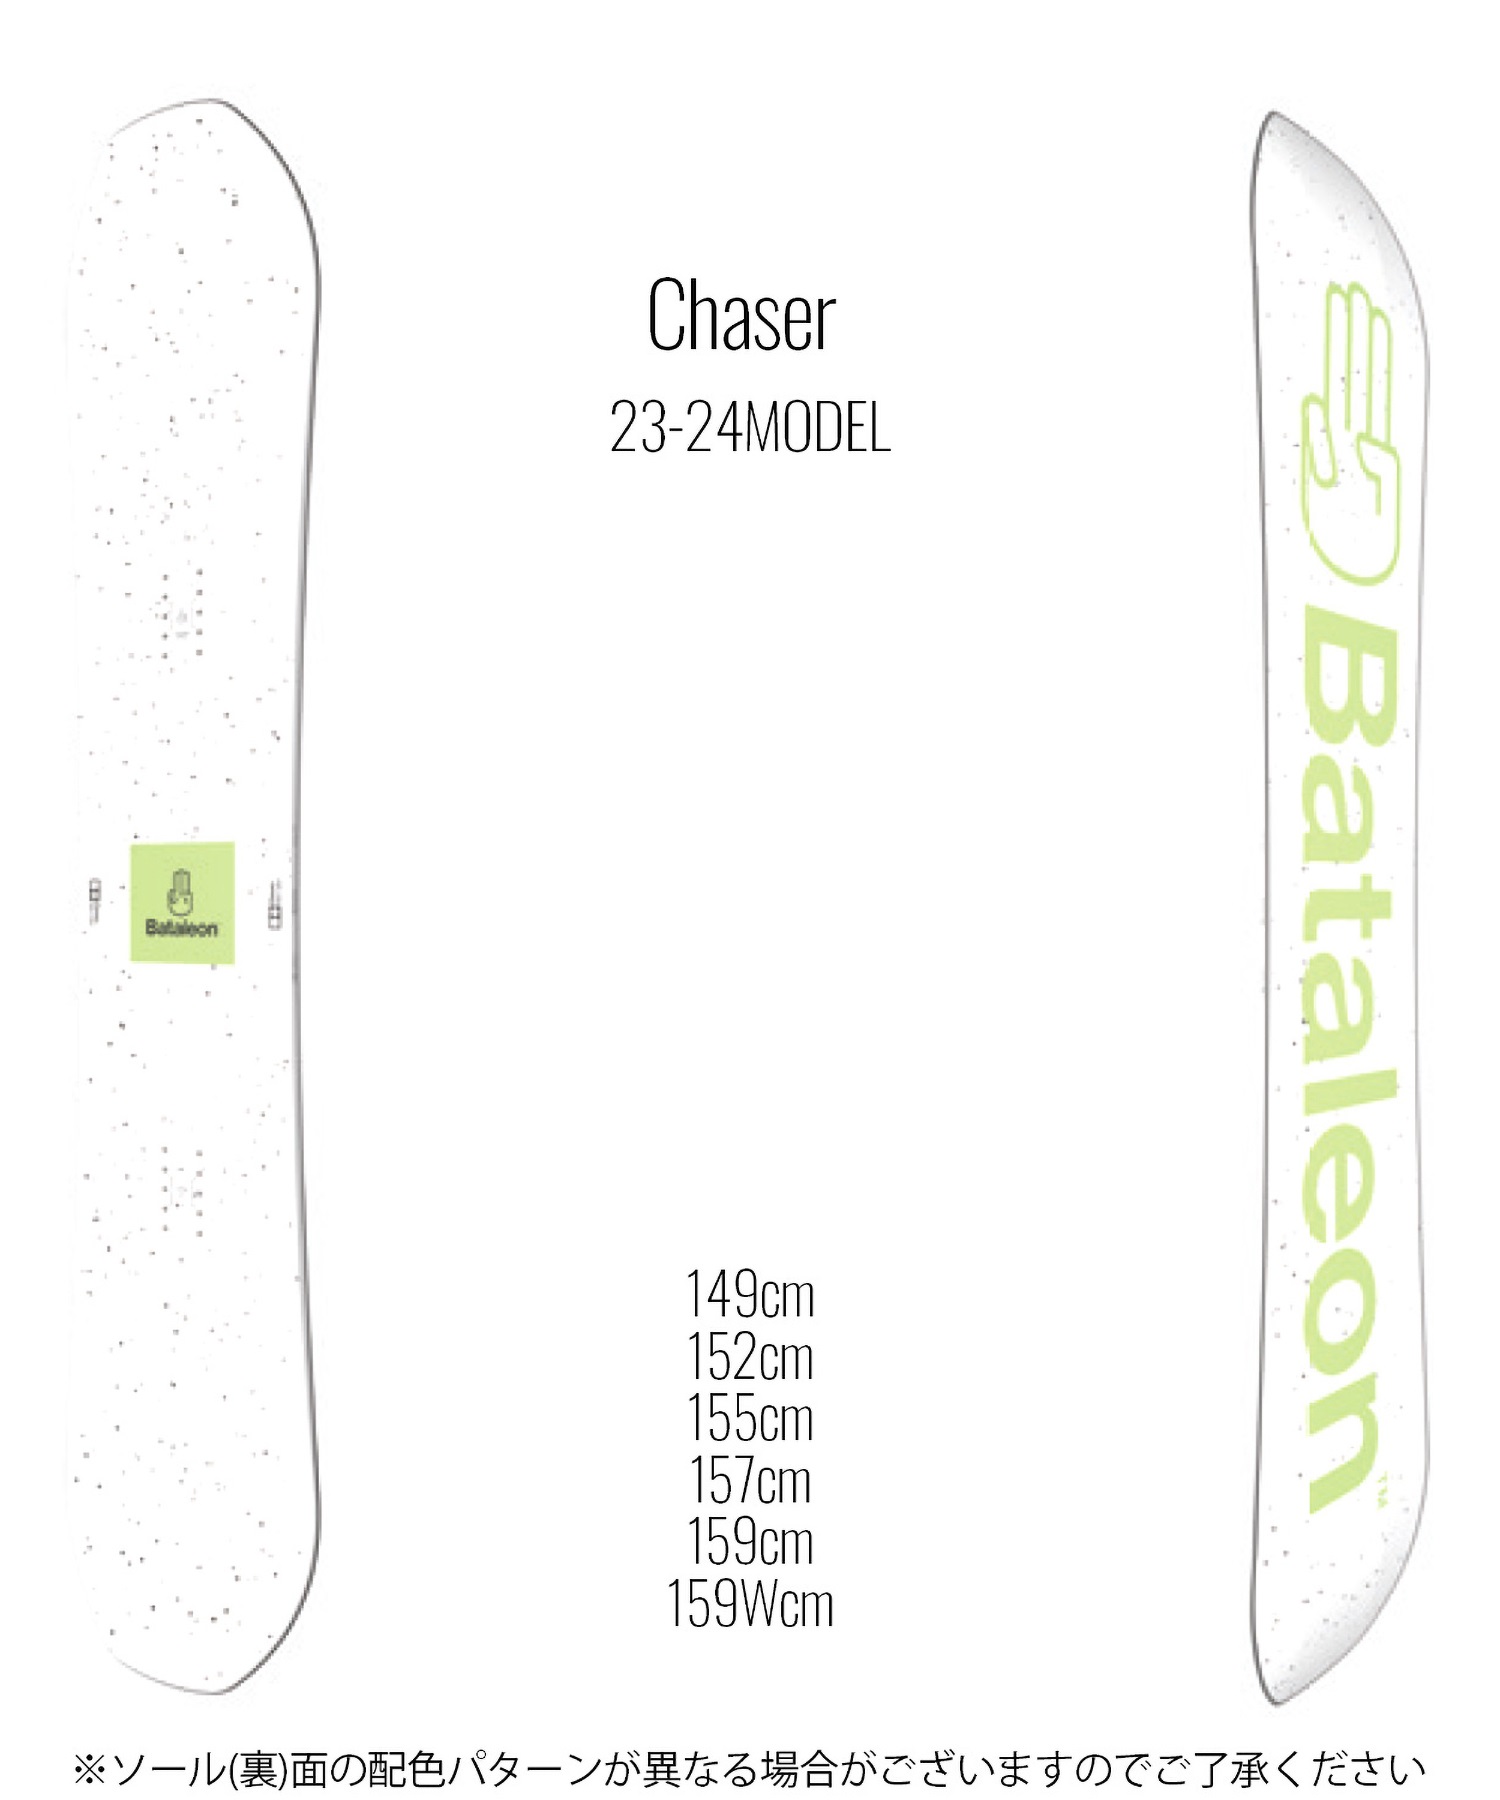 スノーボード 板 メンズ BATALEON バタレオン Chaser 23-24モデル ムラサキスポーツ KK C10(Chaser-149cm)